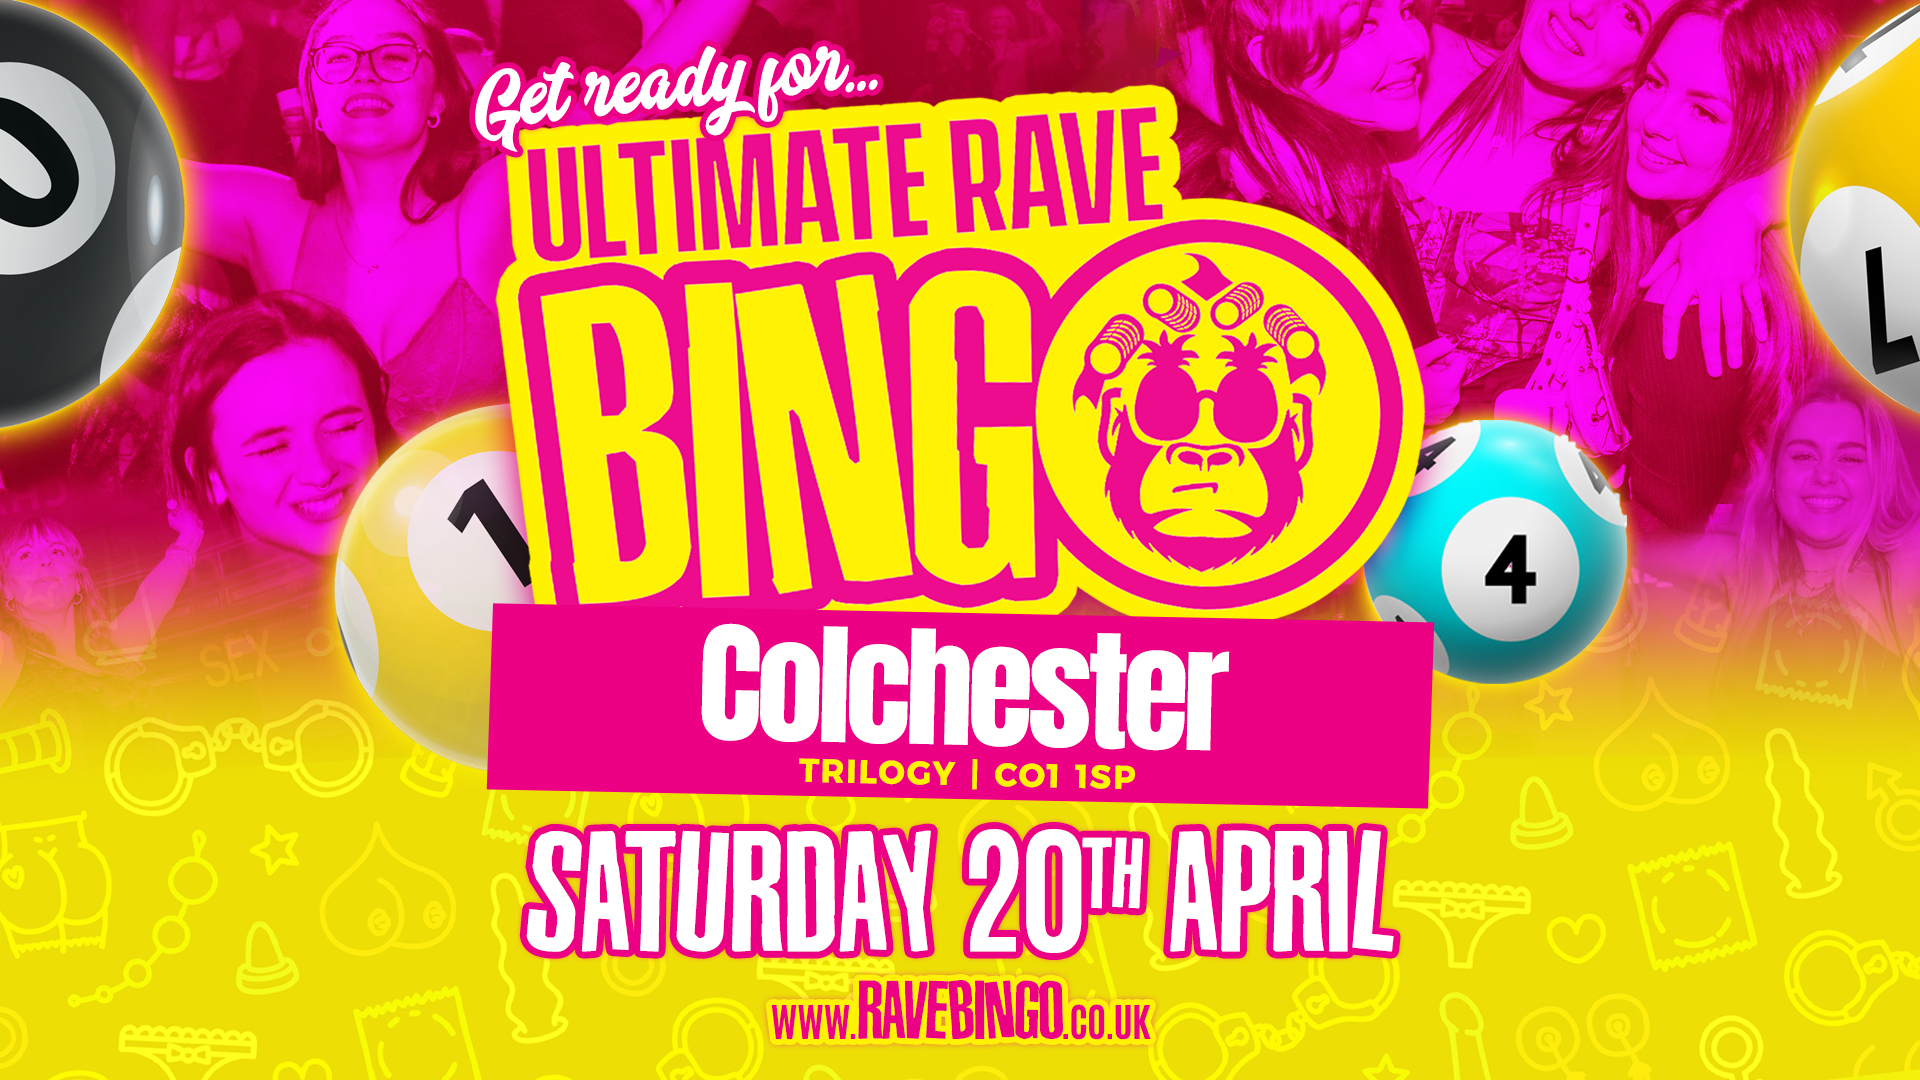 Ultimate Rave Bingo // Colchester // Saturday 20th April